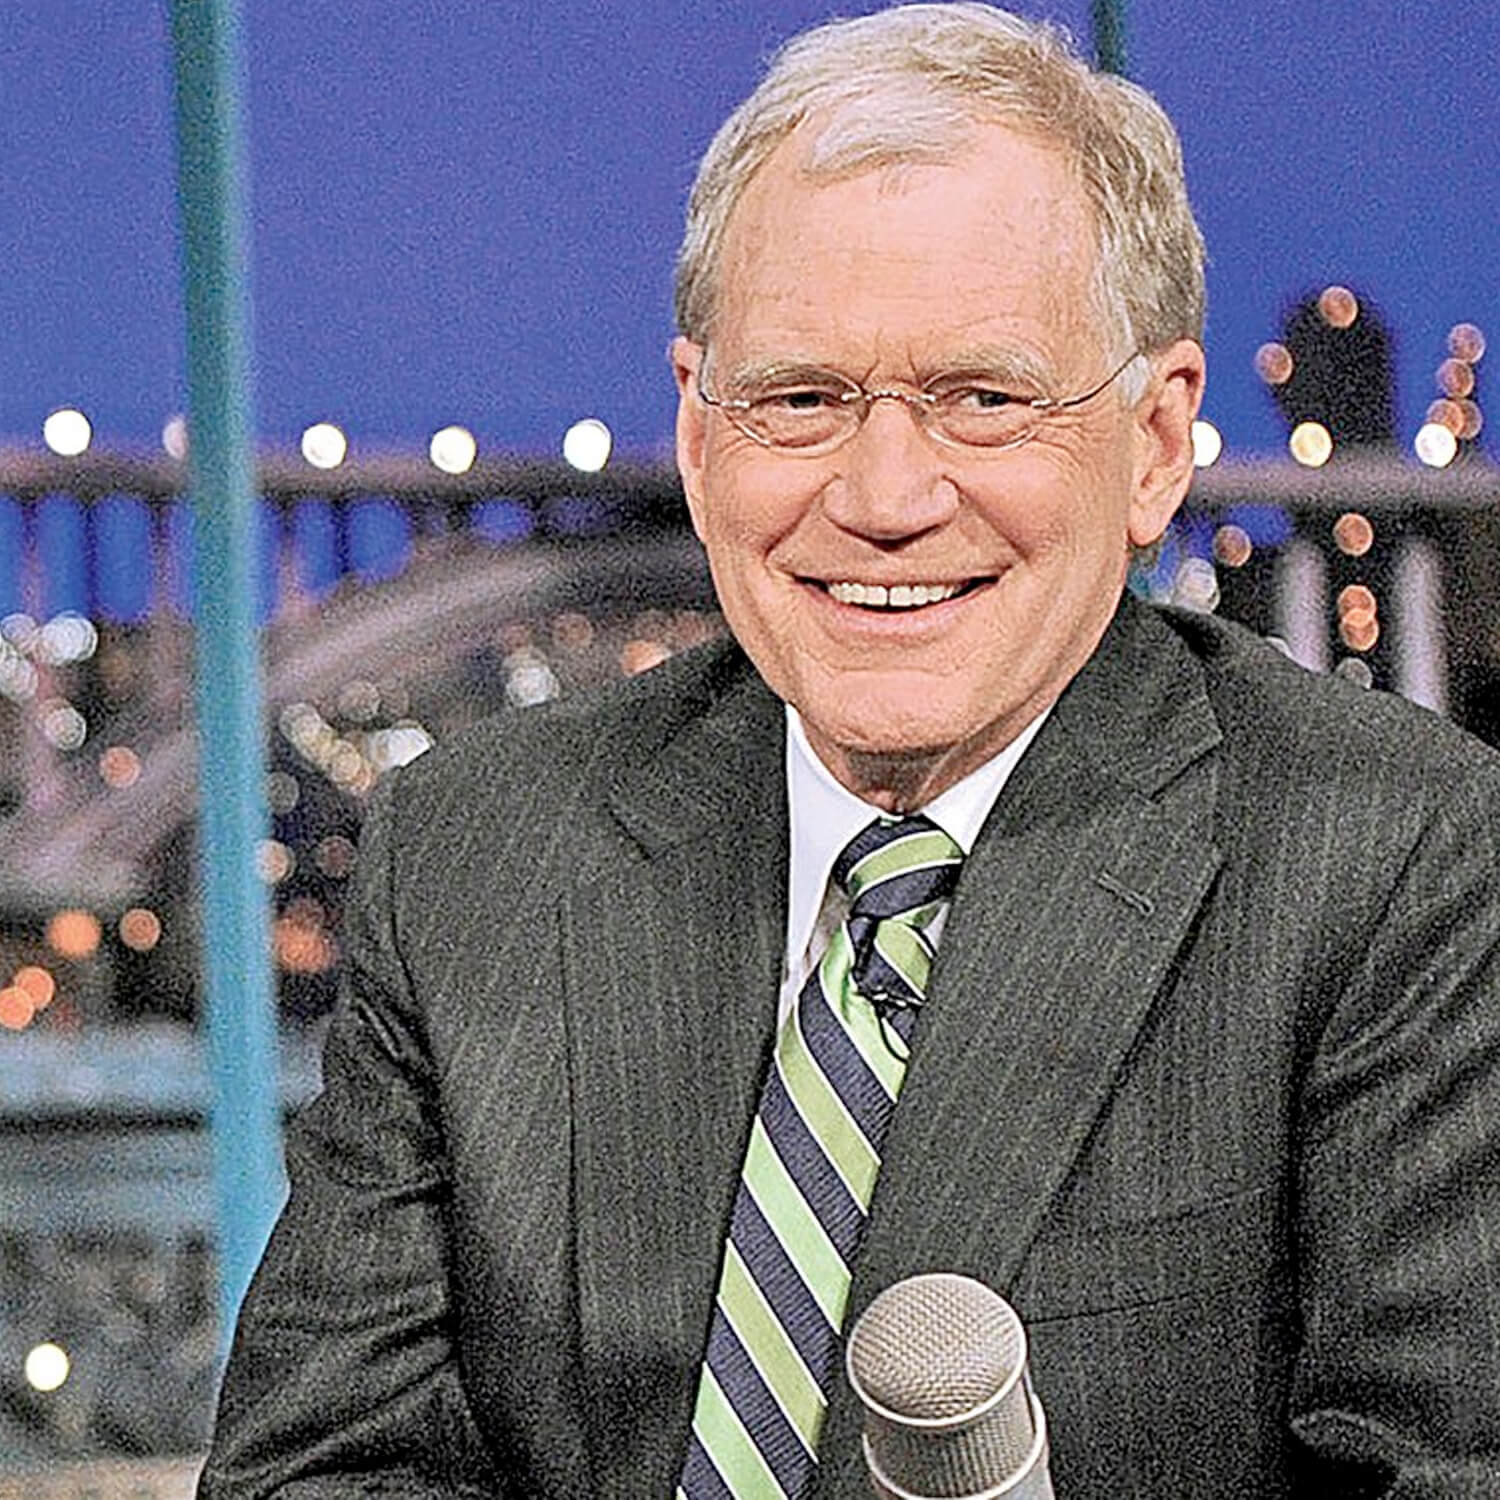 David Letterman in a Grey Suit Portrait